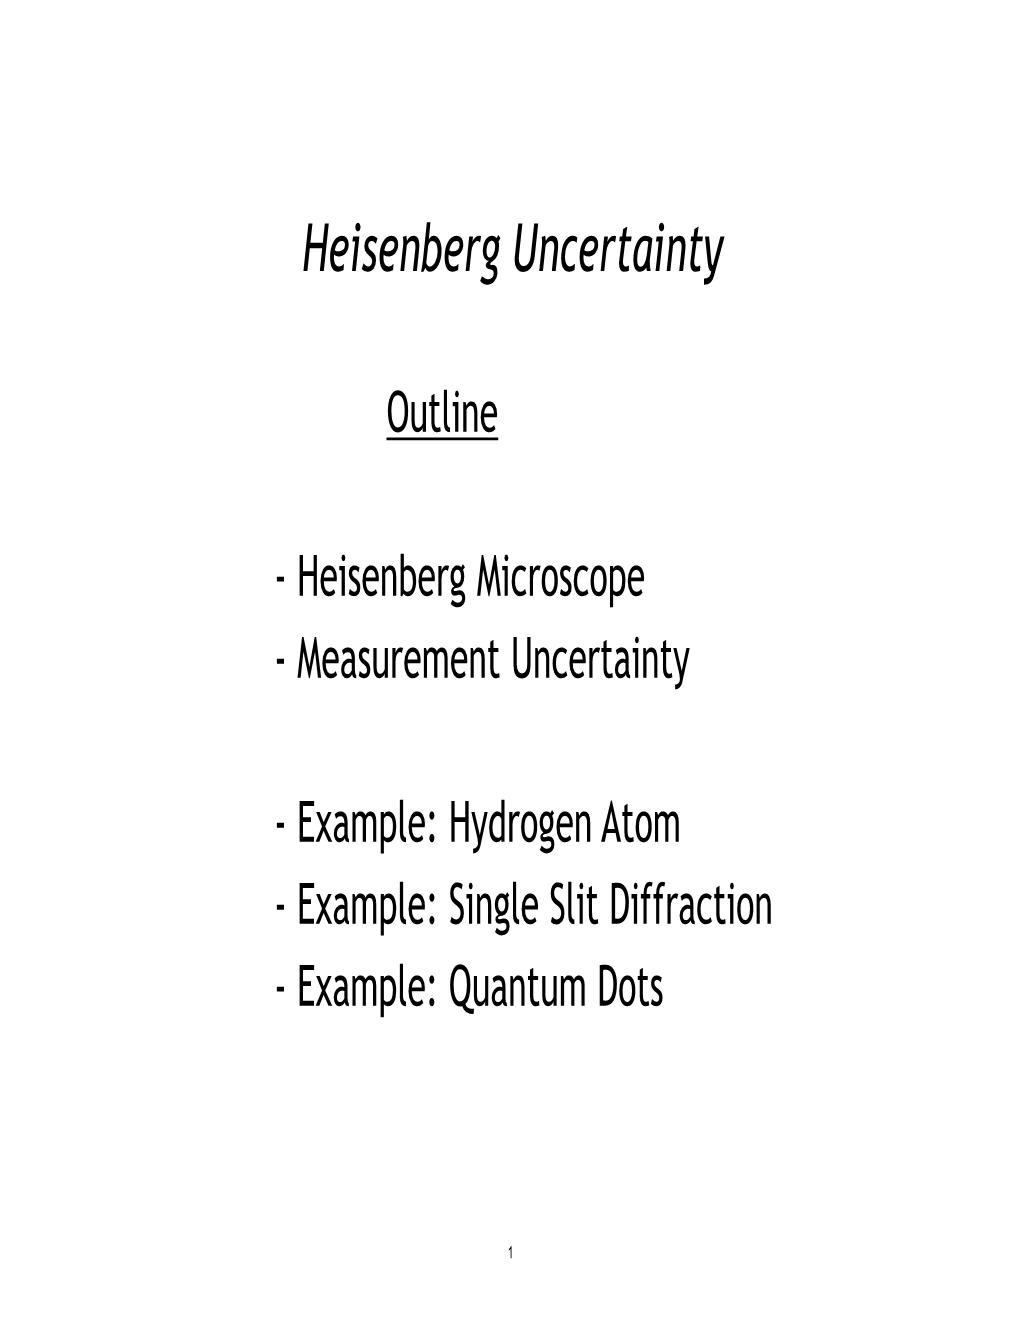 Examples of Heisenberg Uncertainty Principle